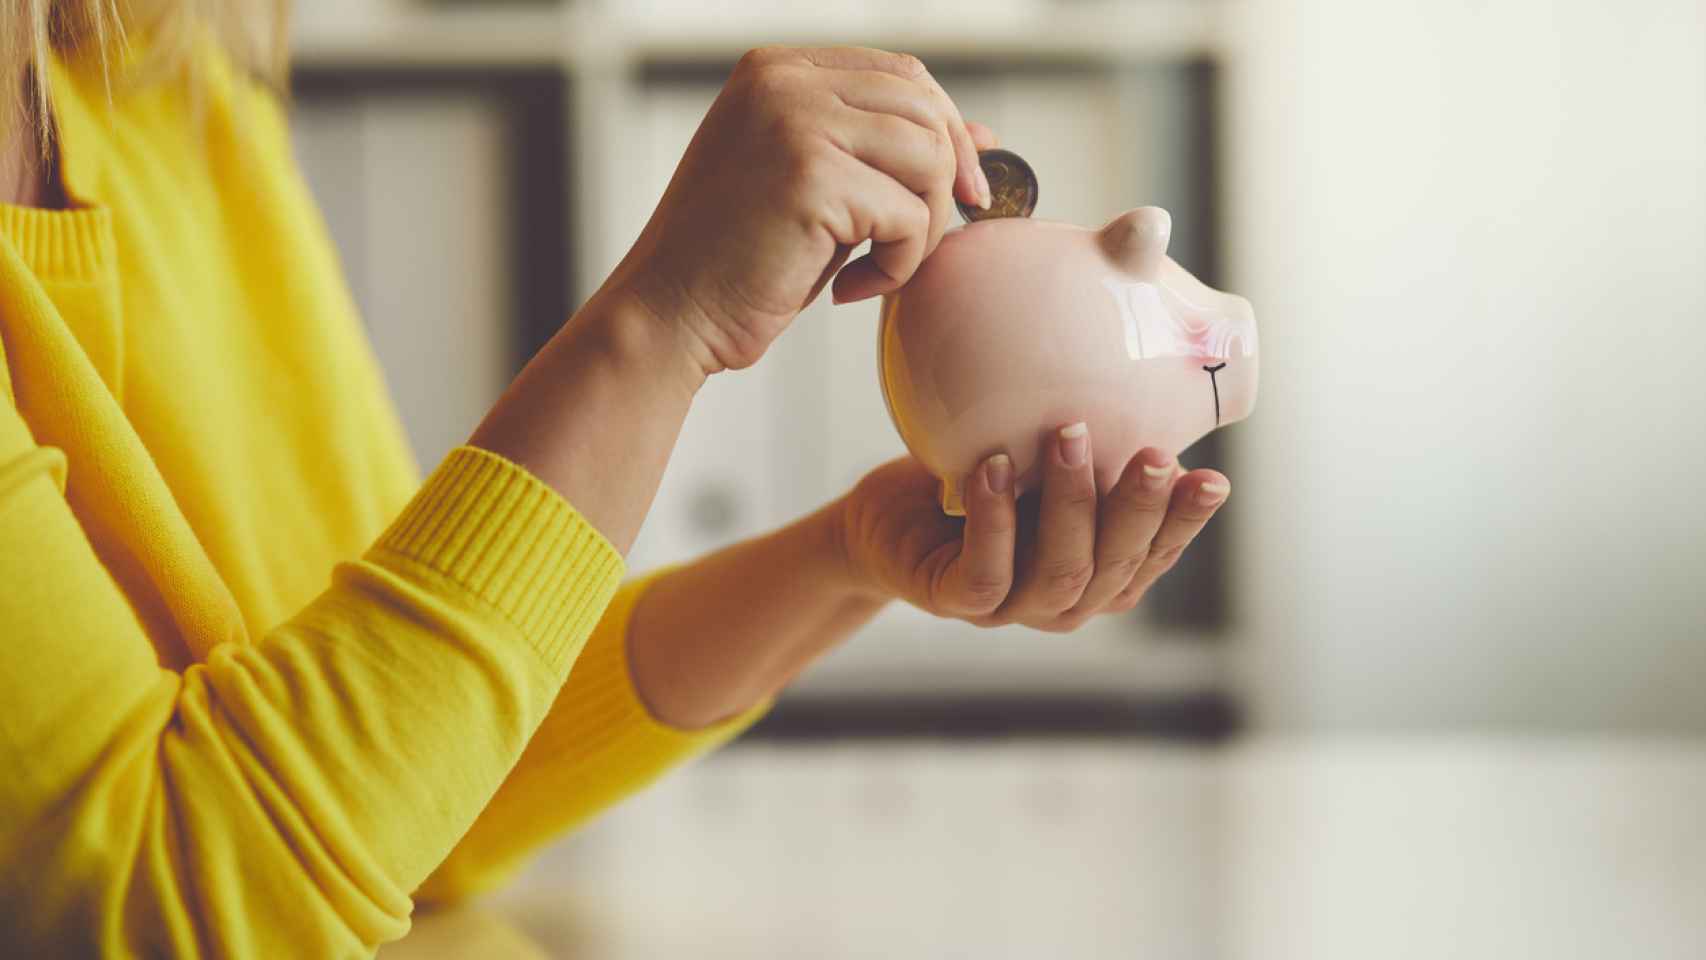 Trucos y consejos para ahorrar dinero de forma sencilla